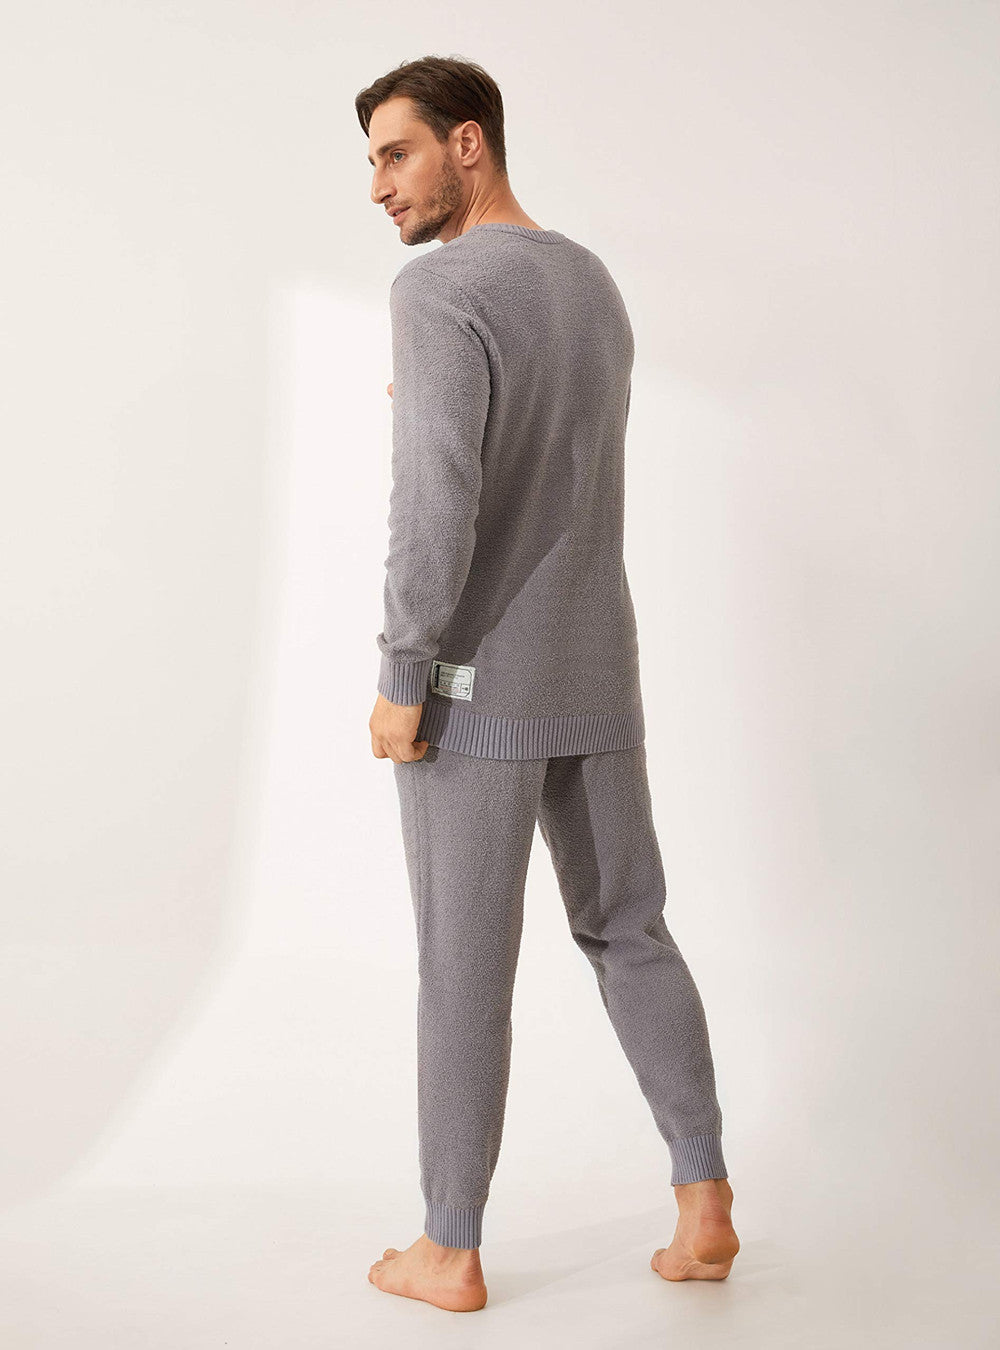 Women Pyjamas Pyjama Set Soft Plush Fleece Warm Winter Sleepwear